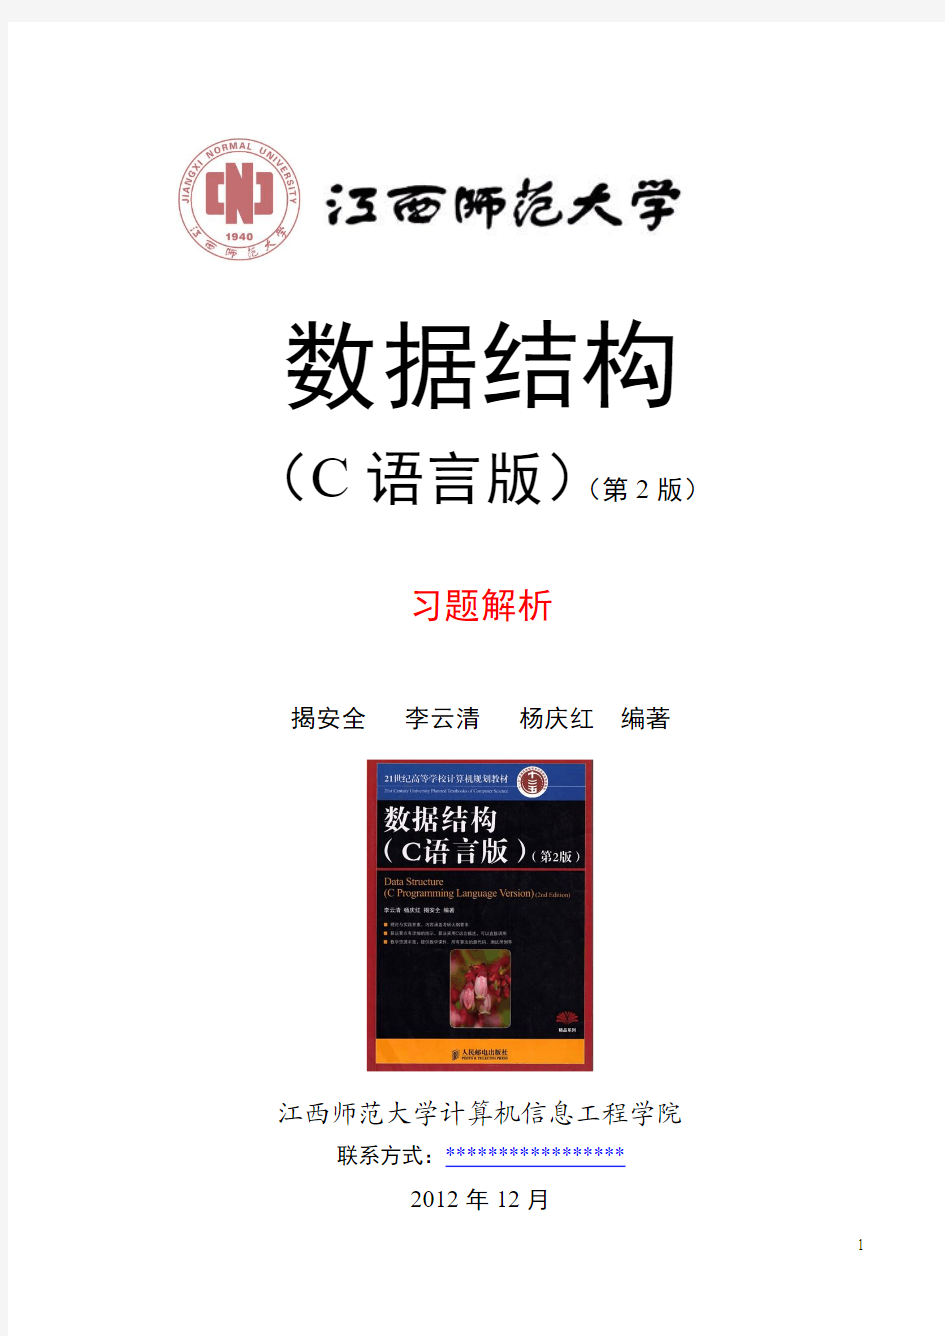 华中科技大学数据结构(C语言版第2版_李云清)习题答案2012-12